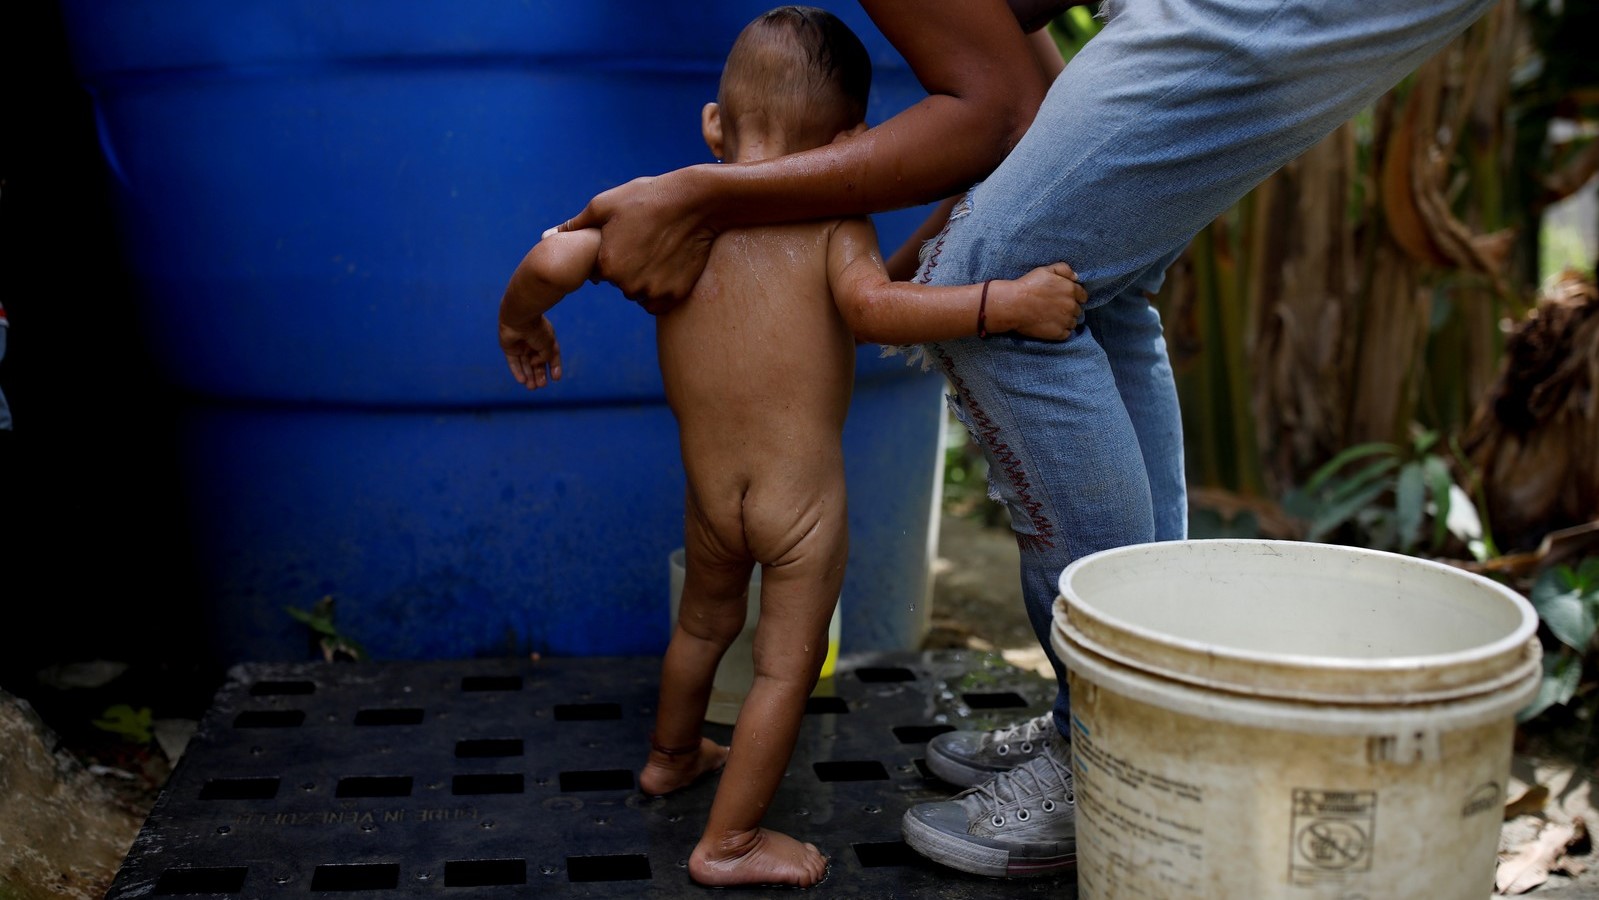 Com colapso na saúde, Venezuela está sob 'emergência humanitária complexa', diz ONG norte-americana